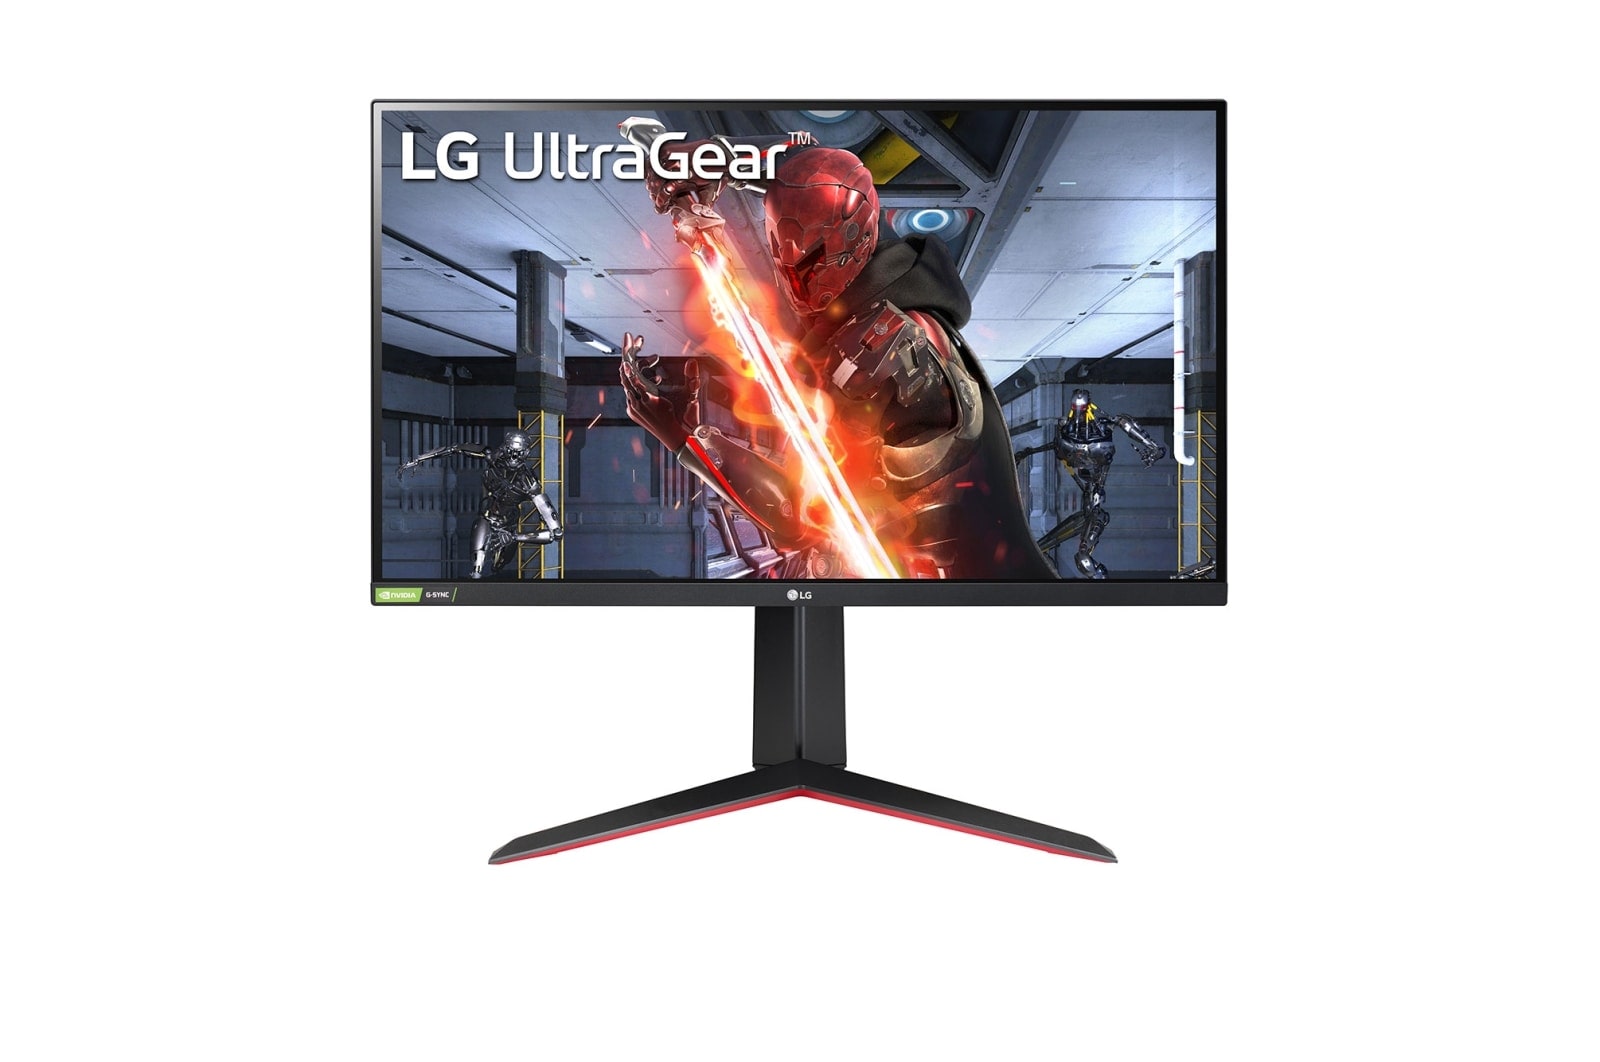 LG UltraGear™ 27" FHD IPS Gaming Monitor with AMD FreeSync™ Premium, 27GN65R-B